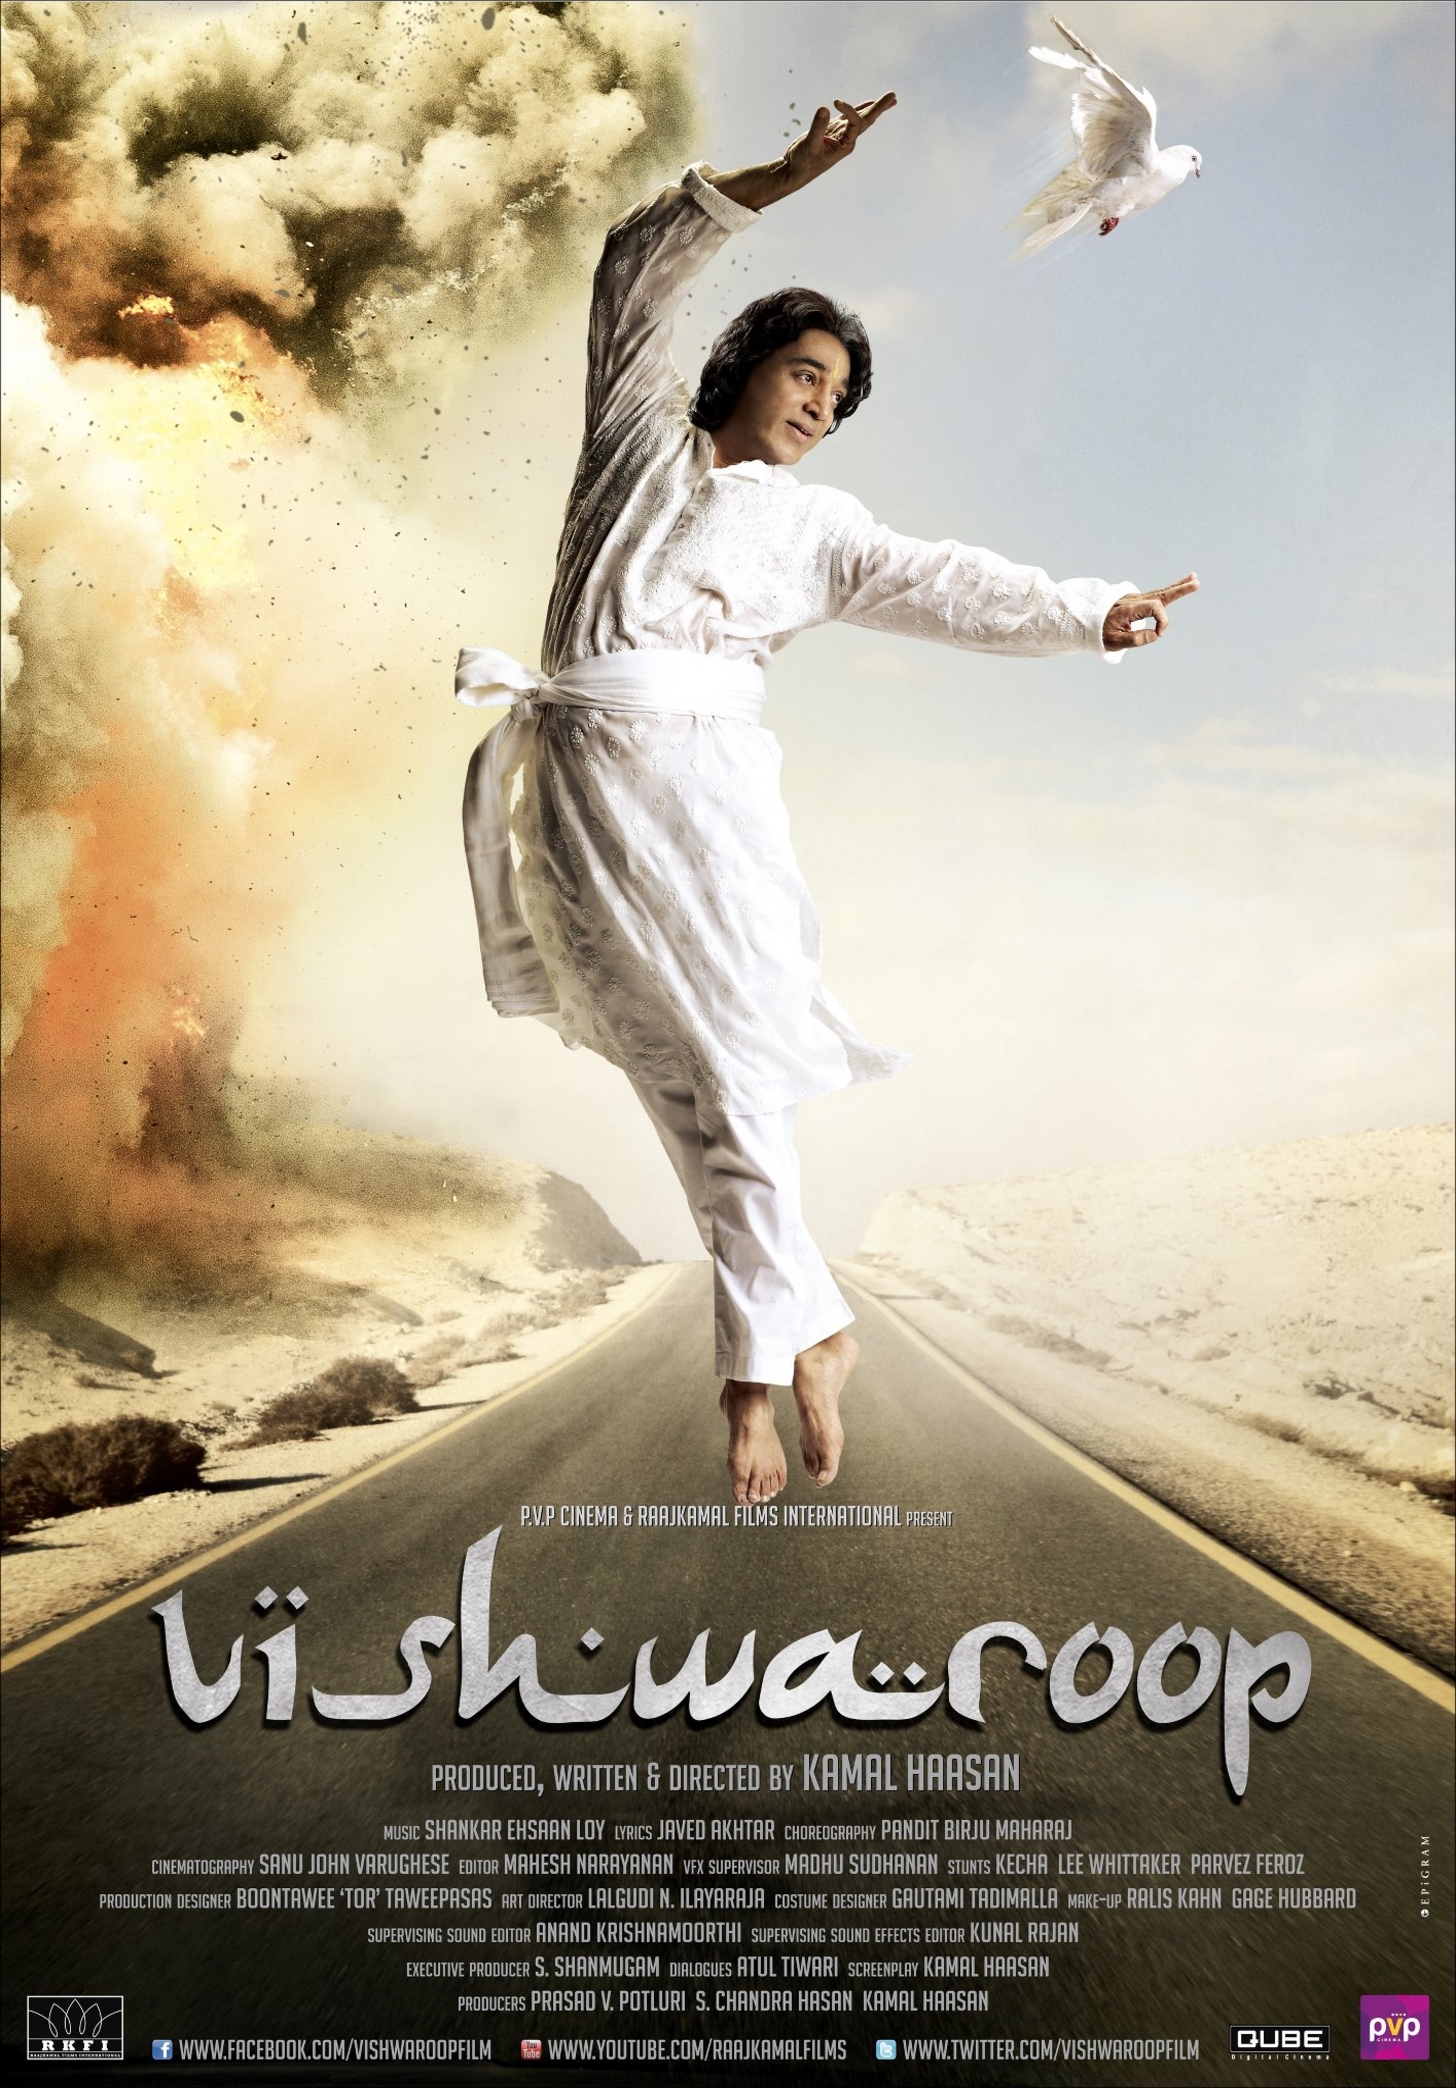 Vishwaroop - Movie Poster #4 (Original)